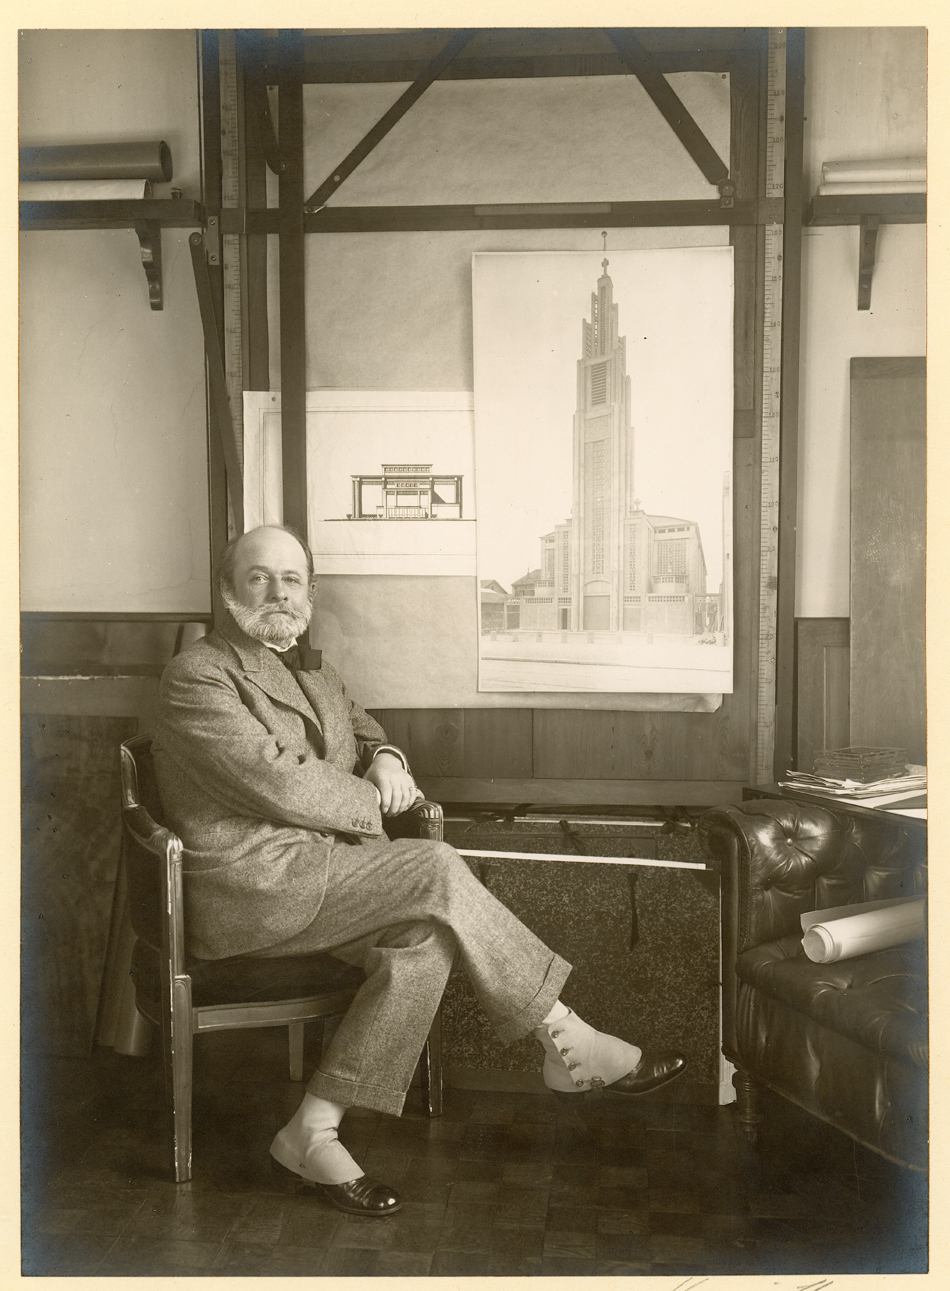 Auguste Perret, 1925 Photography © CNAM/SIAF/CAPA, Archives d’architecture du XXe siècle/Auguste Perret/UFSE/SAIF